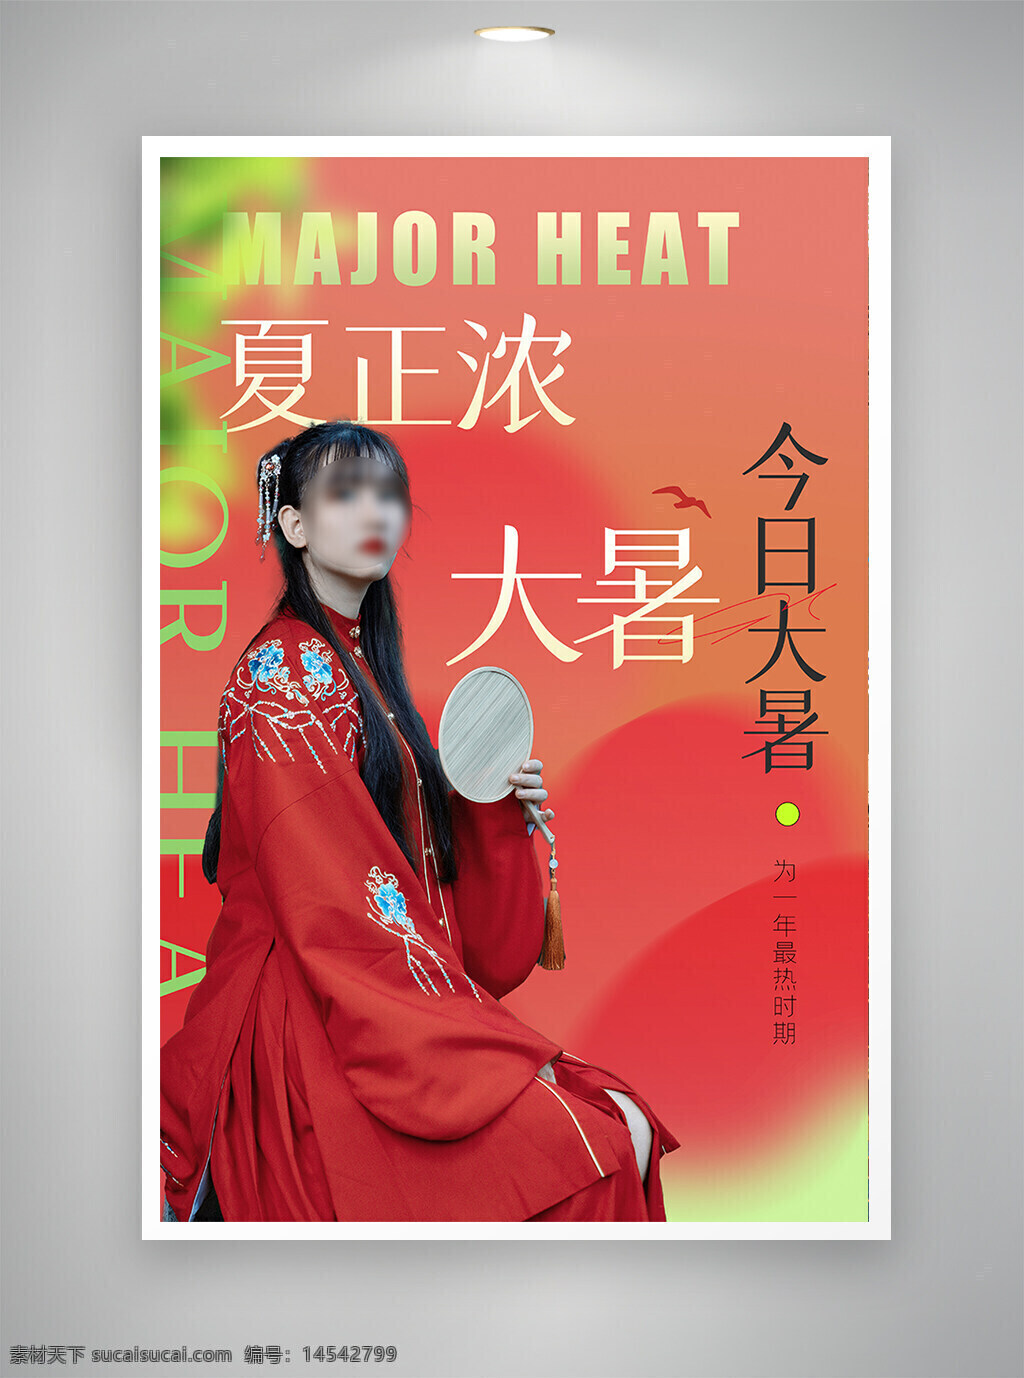 中国风海报 促销海报 节日海报 古风海报 大暑海报